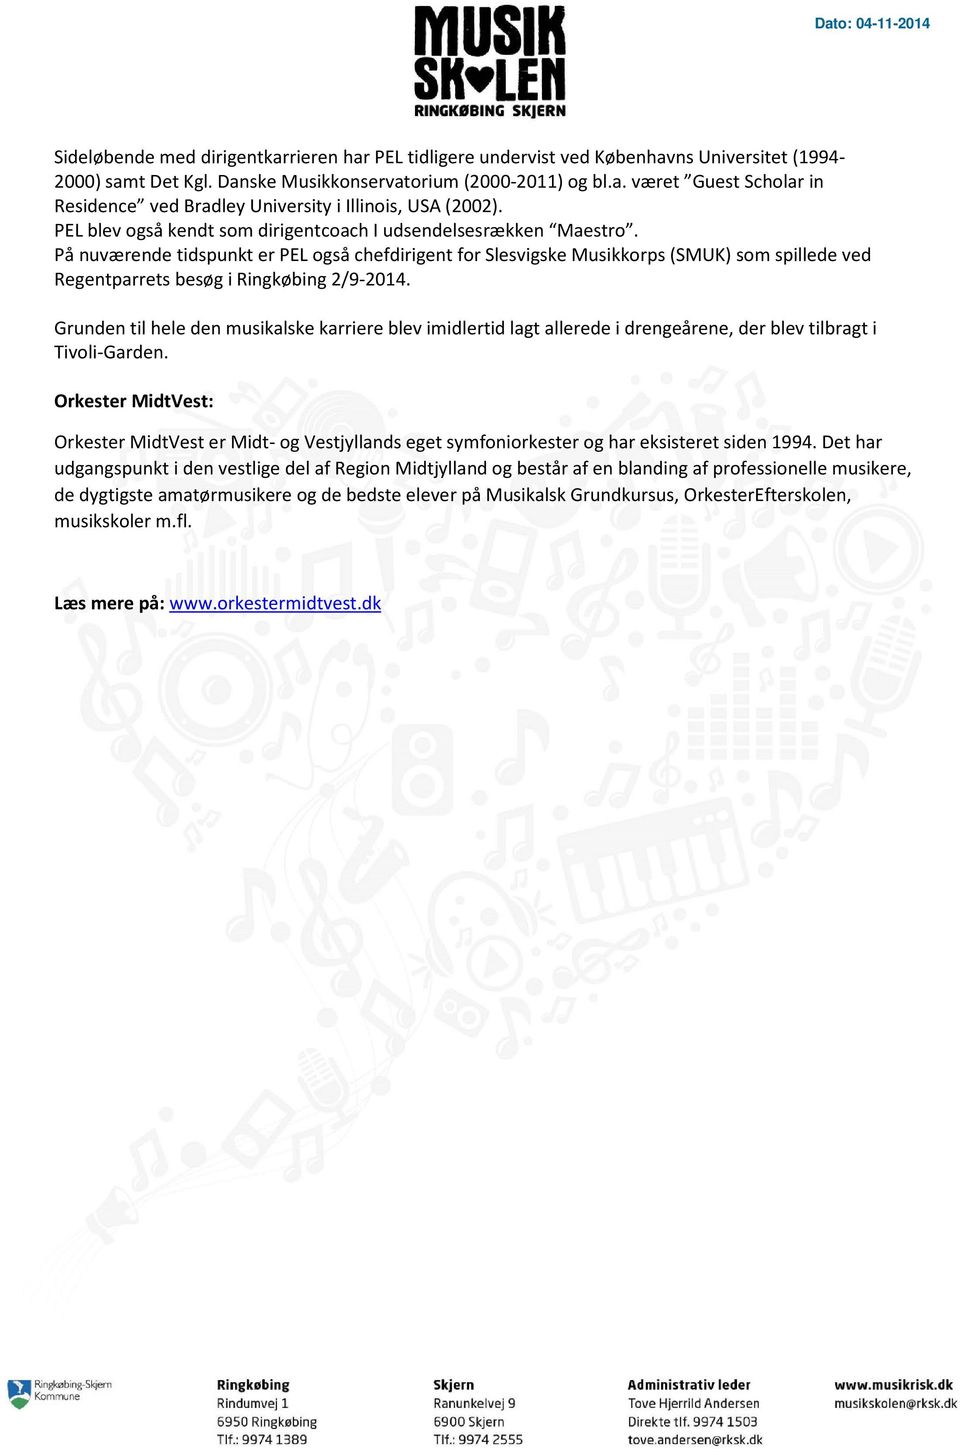 På nuværende tidspunkt er PEL også chefdirigent for Slesvigske Musikkorps (SMUK) som spillede ved Regentparrets besøg i Ringkøbing 2/9-2014.